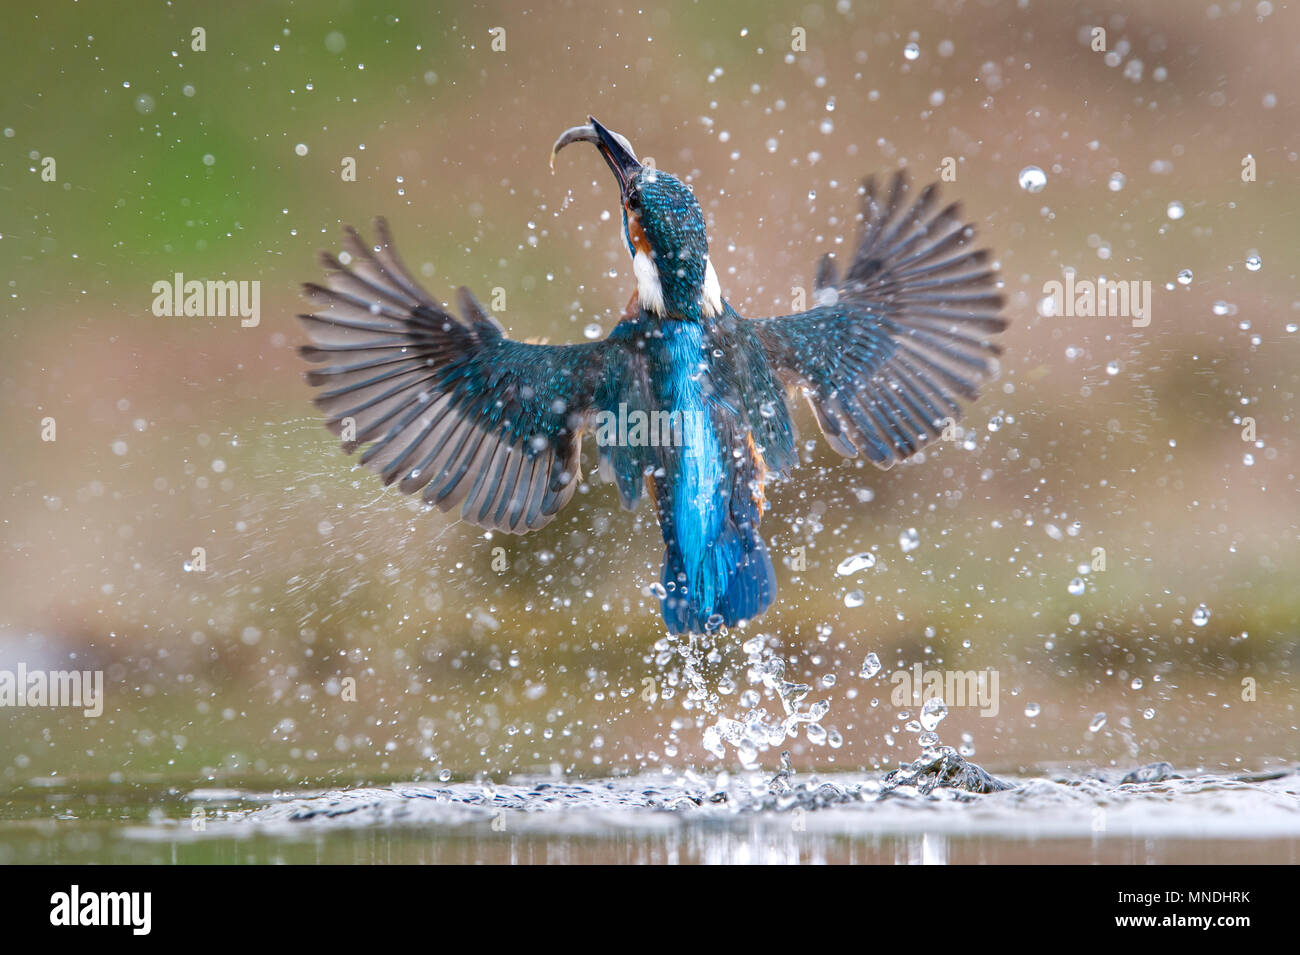 Une photo d'action d'une politique commune de Kingfisher (Alcedo atthis) sortant de l'eau après la plongée pour les poissons dans un petit bassin au Royaume-Uni Banque D'Images